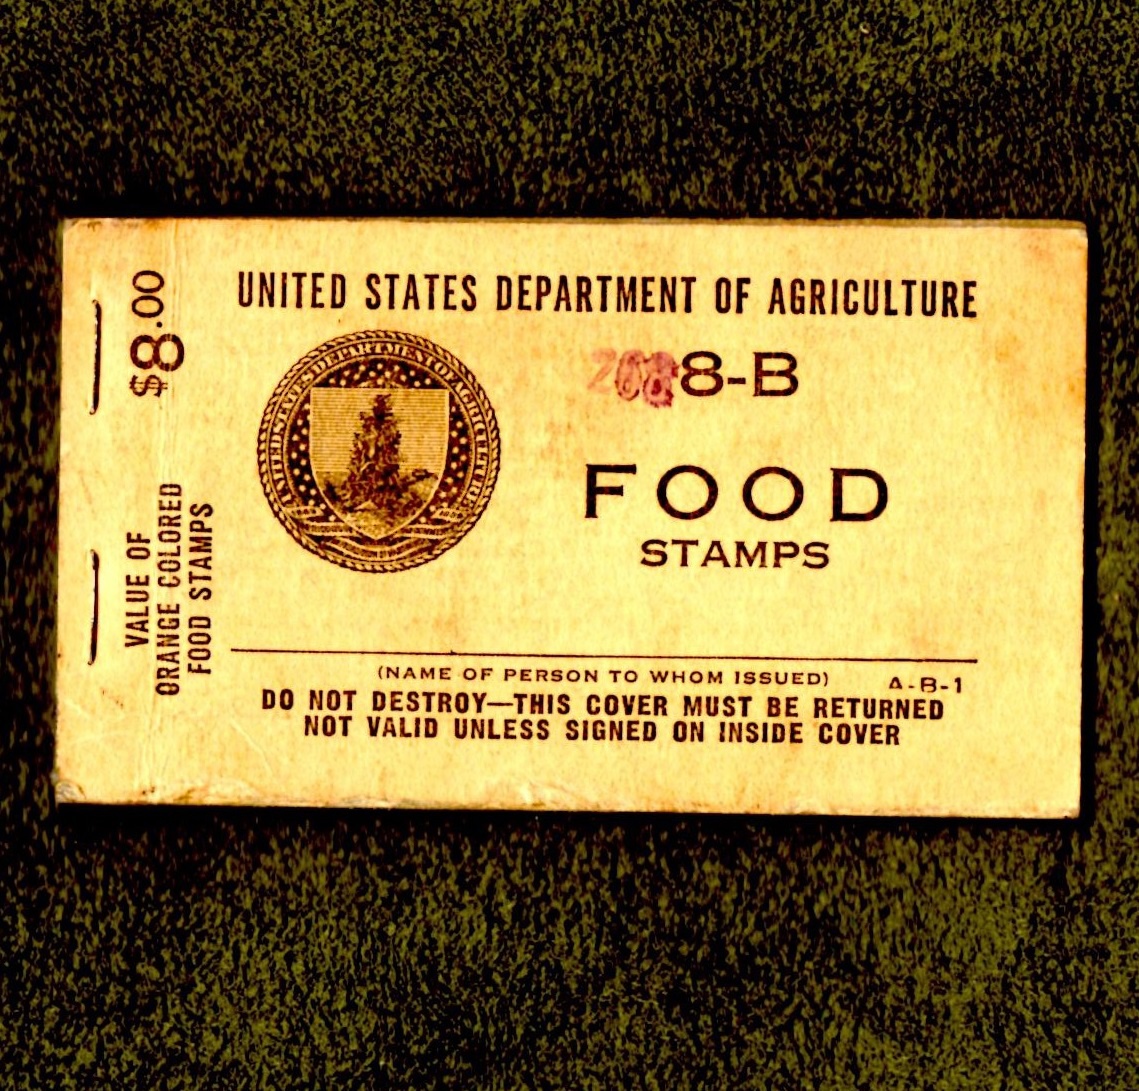 1939: The Original Food Stamp